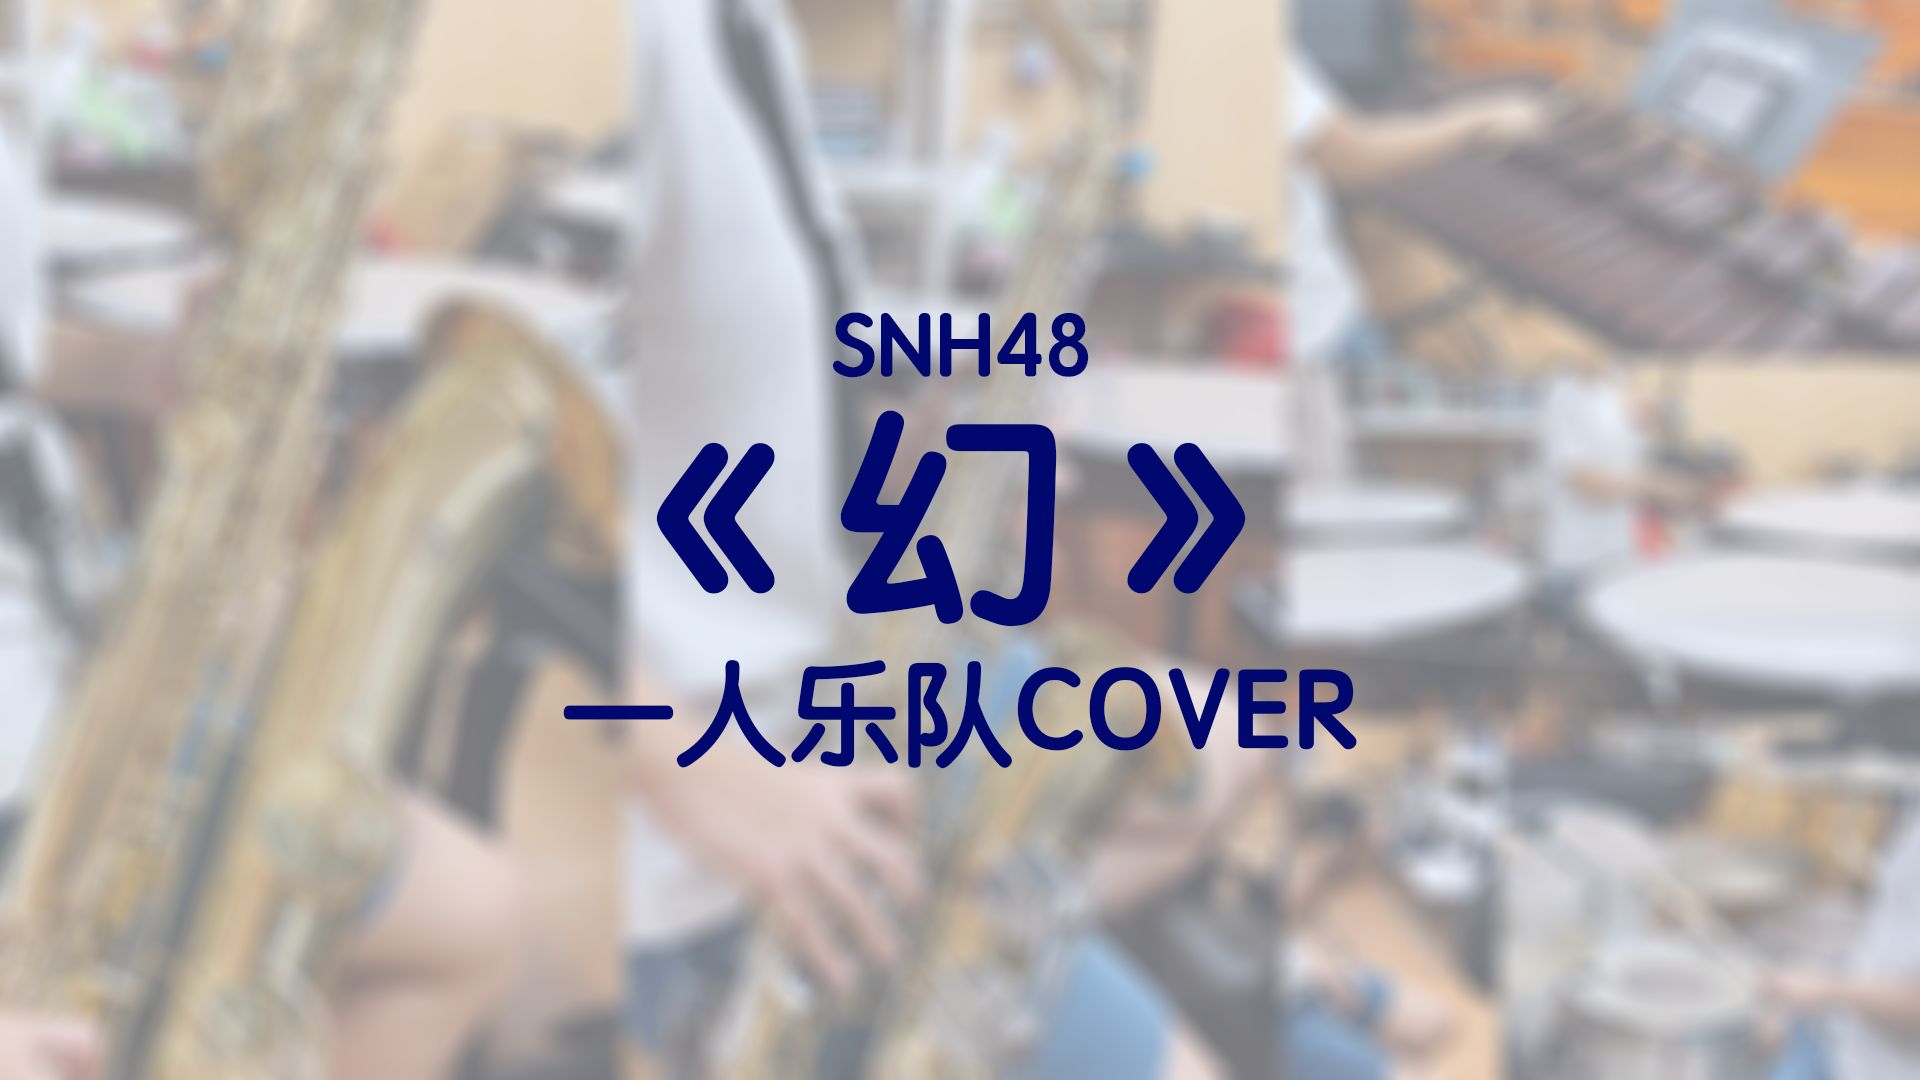 灯！红！酒！绿！一人乐队COVER《幻》｜绝对不是在炫技.mp4【SNH48 TEAM SII】